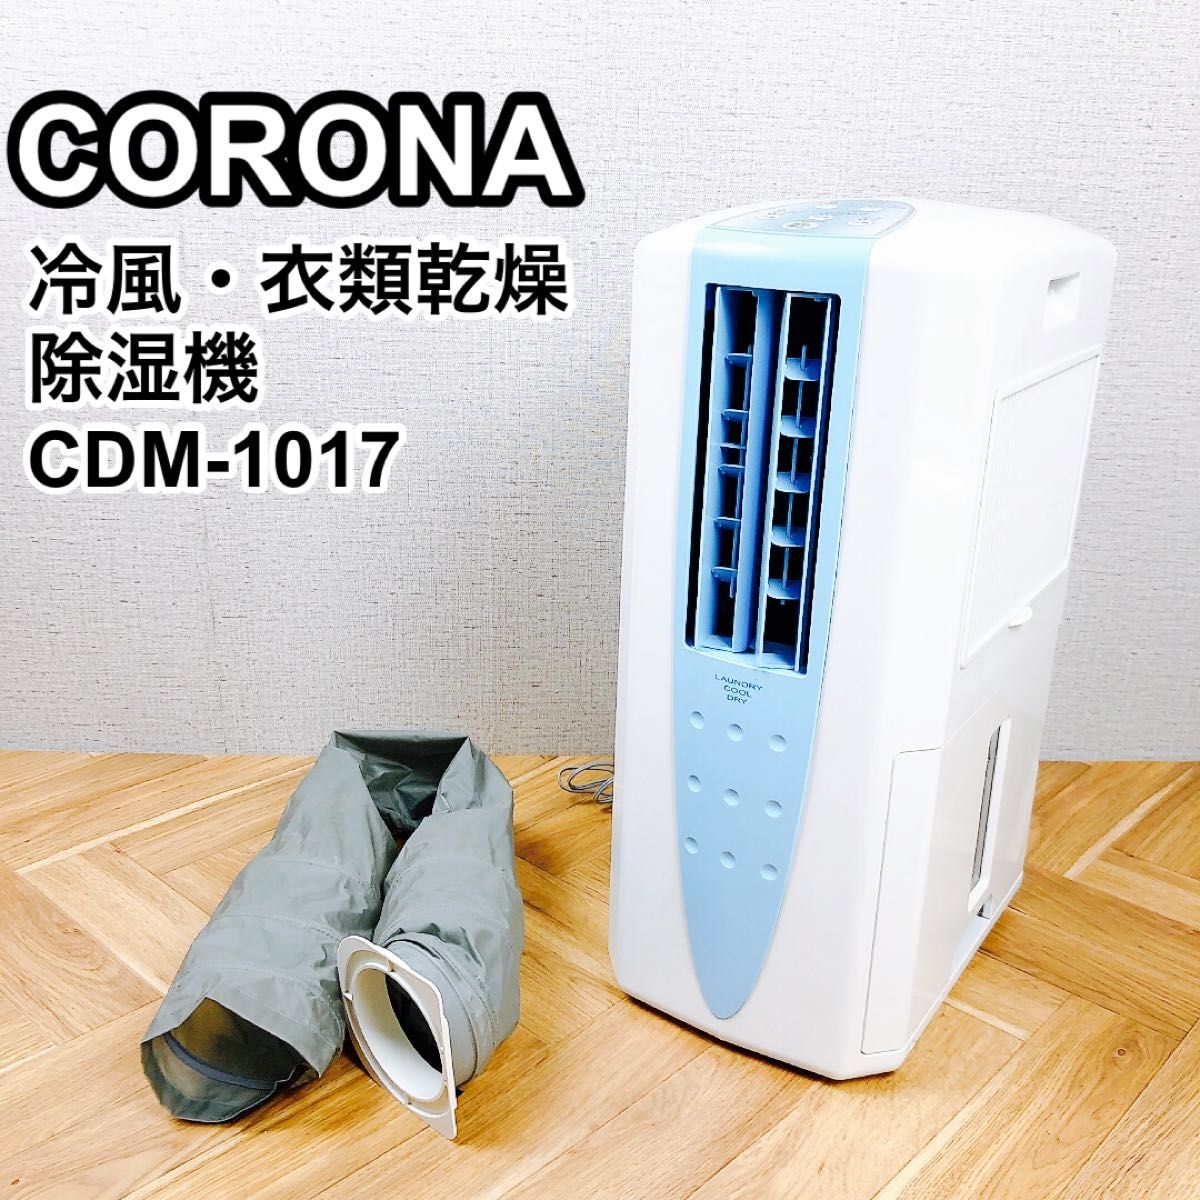 CORONA コロナ 冷風 衣類乾燥除湿機 CDM-1017 どこでもクーラー